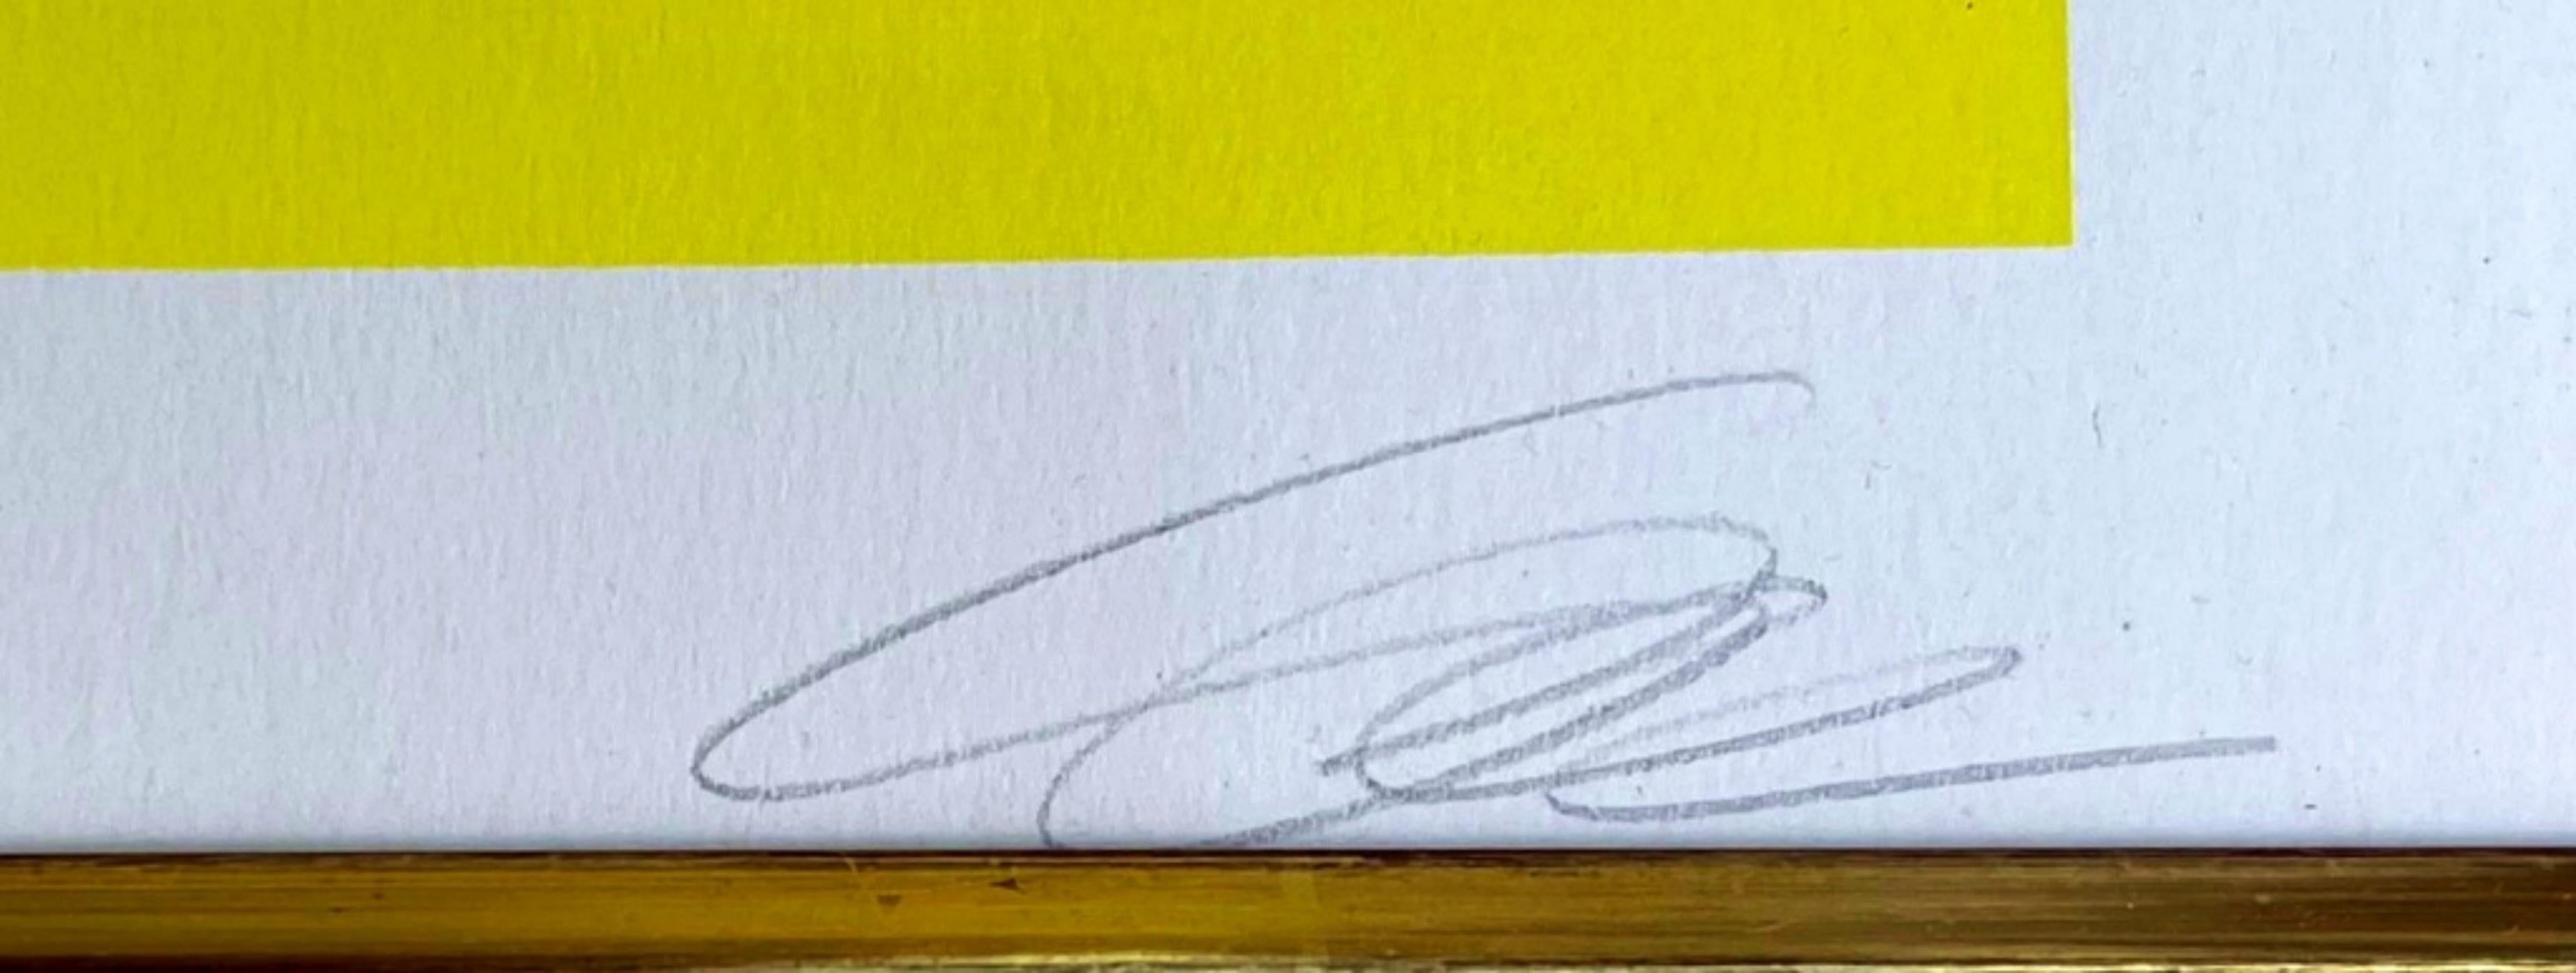 RICHARD PAUL LOHSE
Modulare Ordnungen (eine Platte), 1976
Siebdruck auf Velin-Karton (dünner Karton)
Auf der Vorderseite mit Bleistift signiert und nummeriert 62/100

Der Vintage-Rahmen aus Genf, Schweiz, mit abgeschrägten Goldkanten ist im